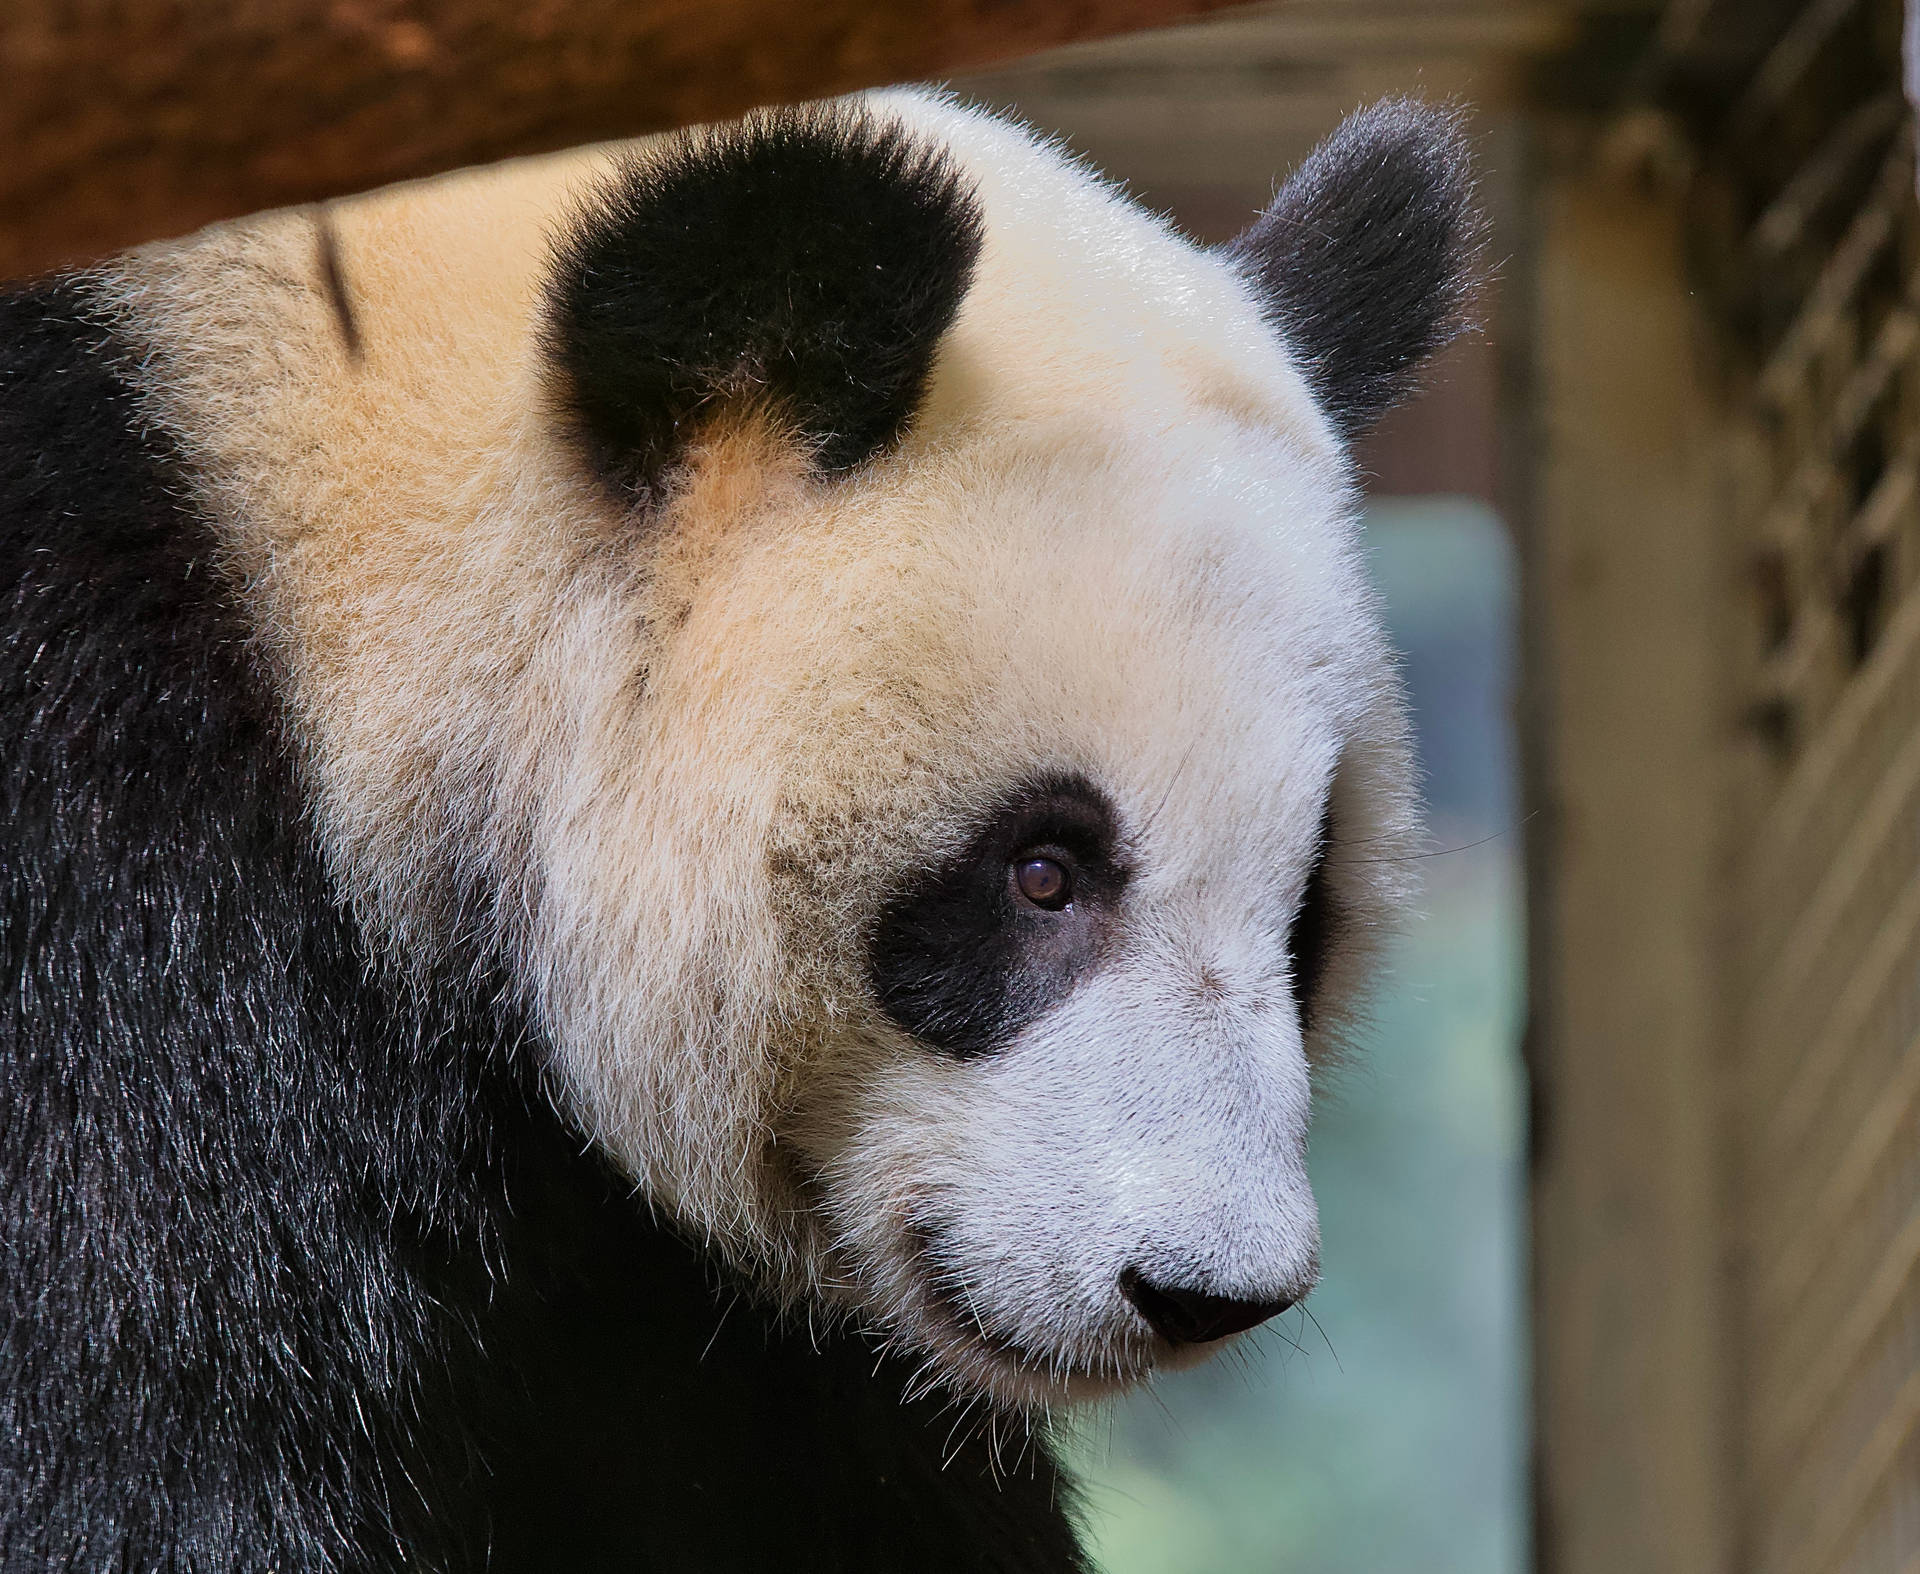 Beautiful Panda Looking Right